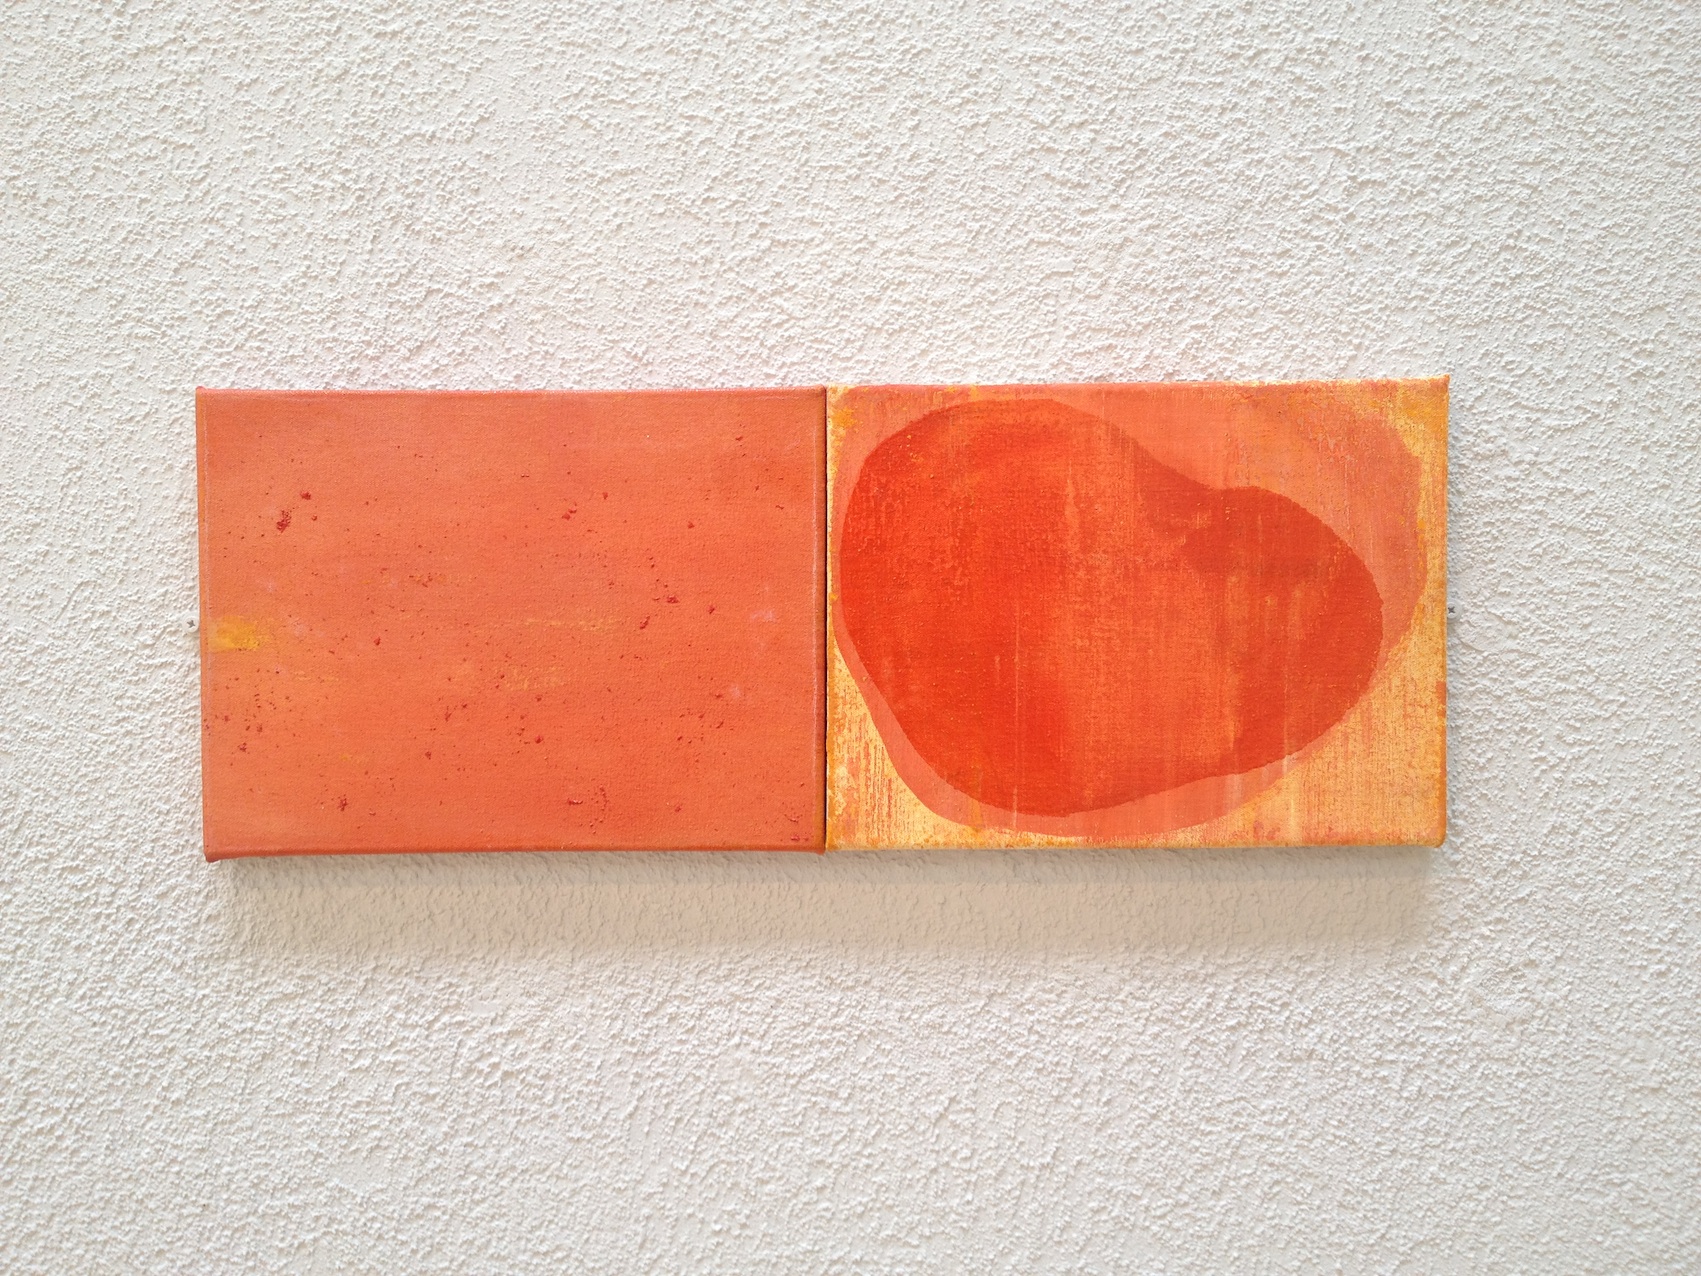 Untitled (2 Orange) 2014